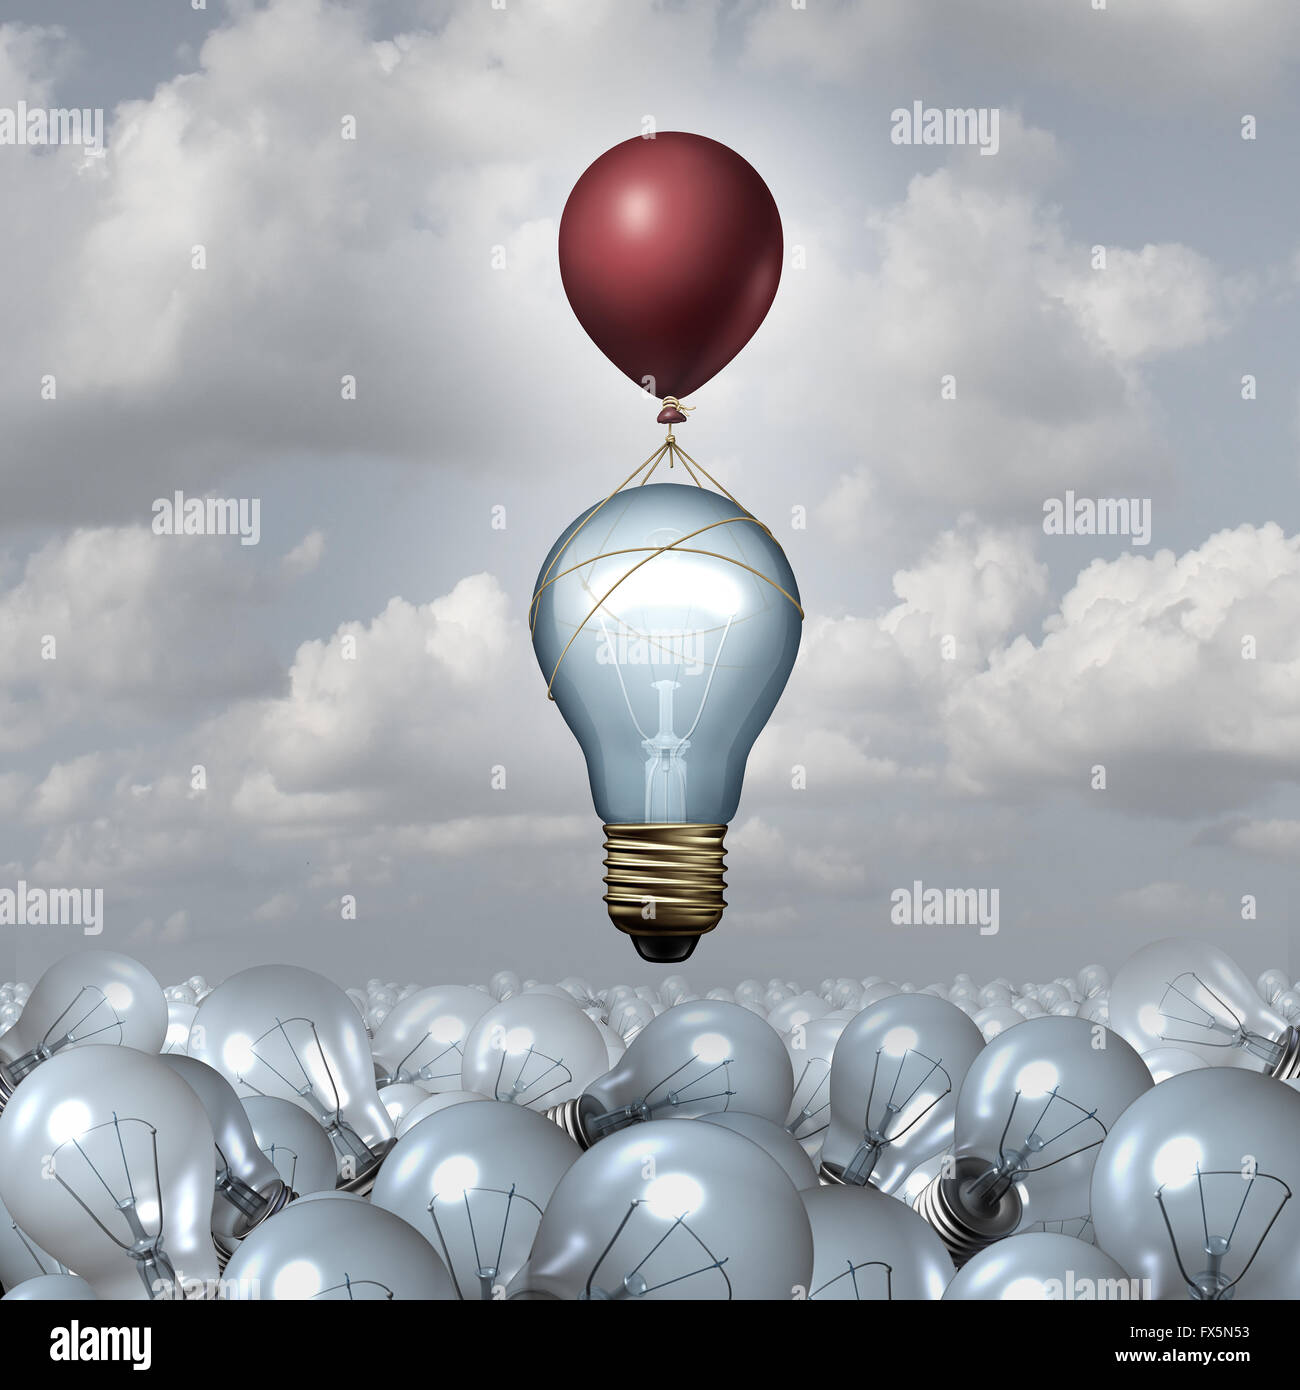 La pensée innovatrice concept comme un groupe de 3D illustration ampoules dans un vaste paysage comme une ampoule électrique s'élève avec l'aide d'un ballon comme une métaphore de la motivation pour l'innovation créative d'inspiration. Banque D'Images